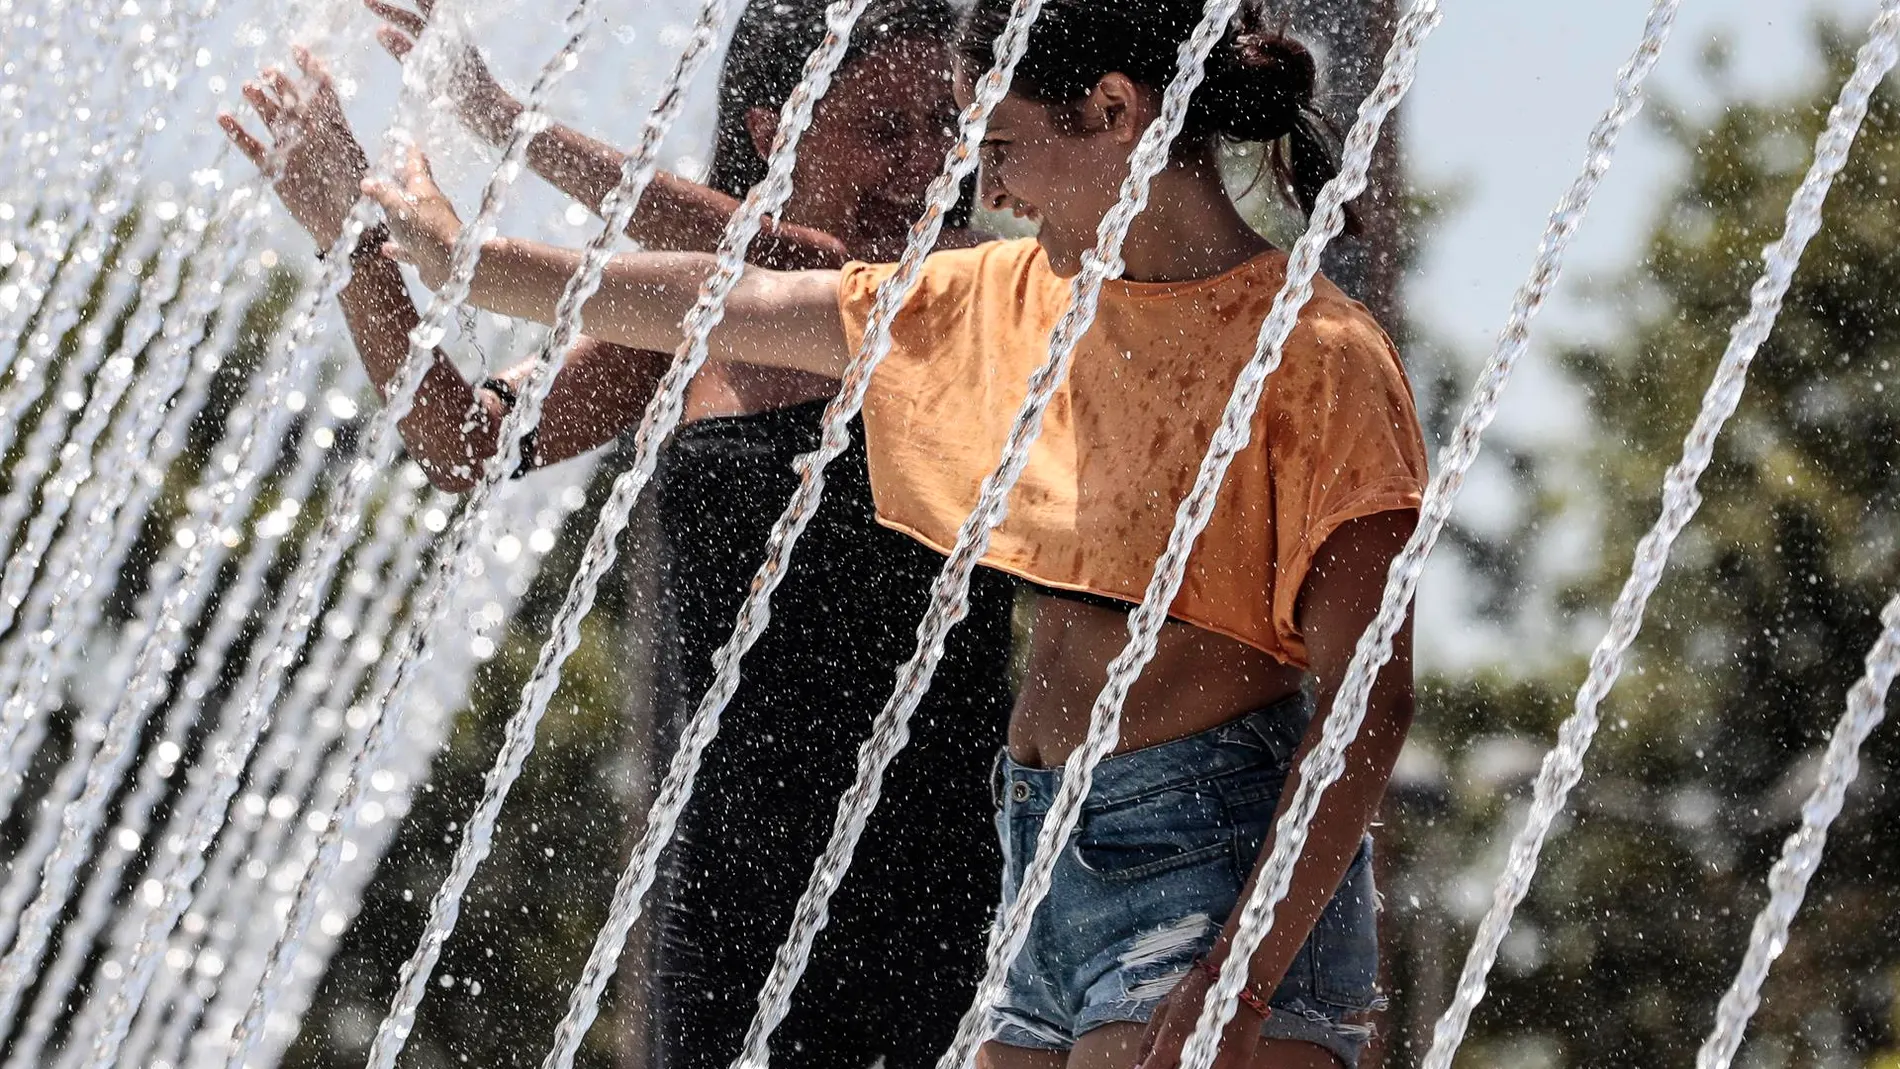 Dos jóvenes se refrescan durante la ola de calor